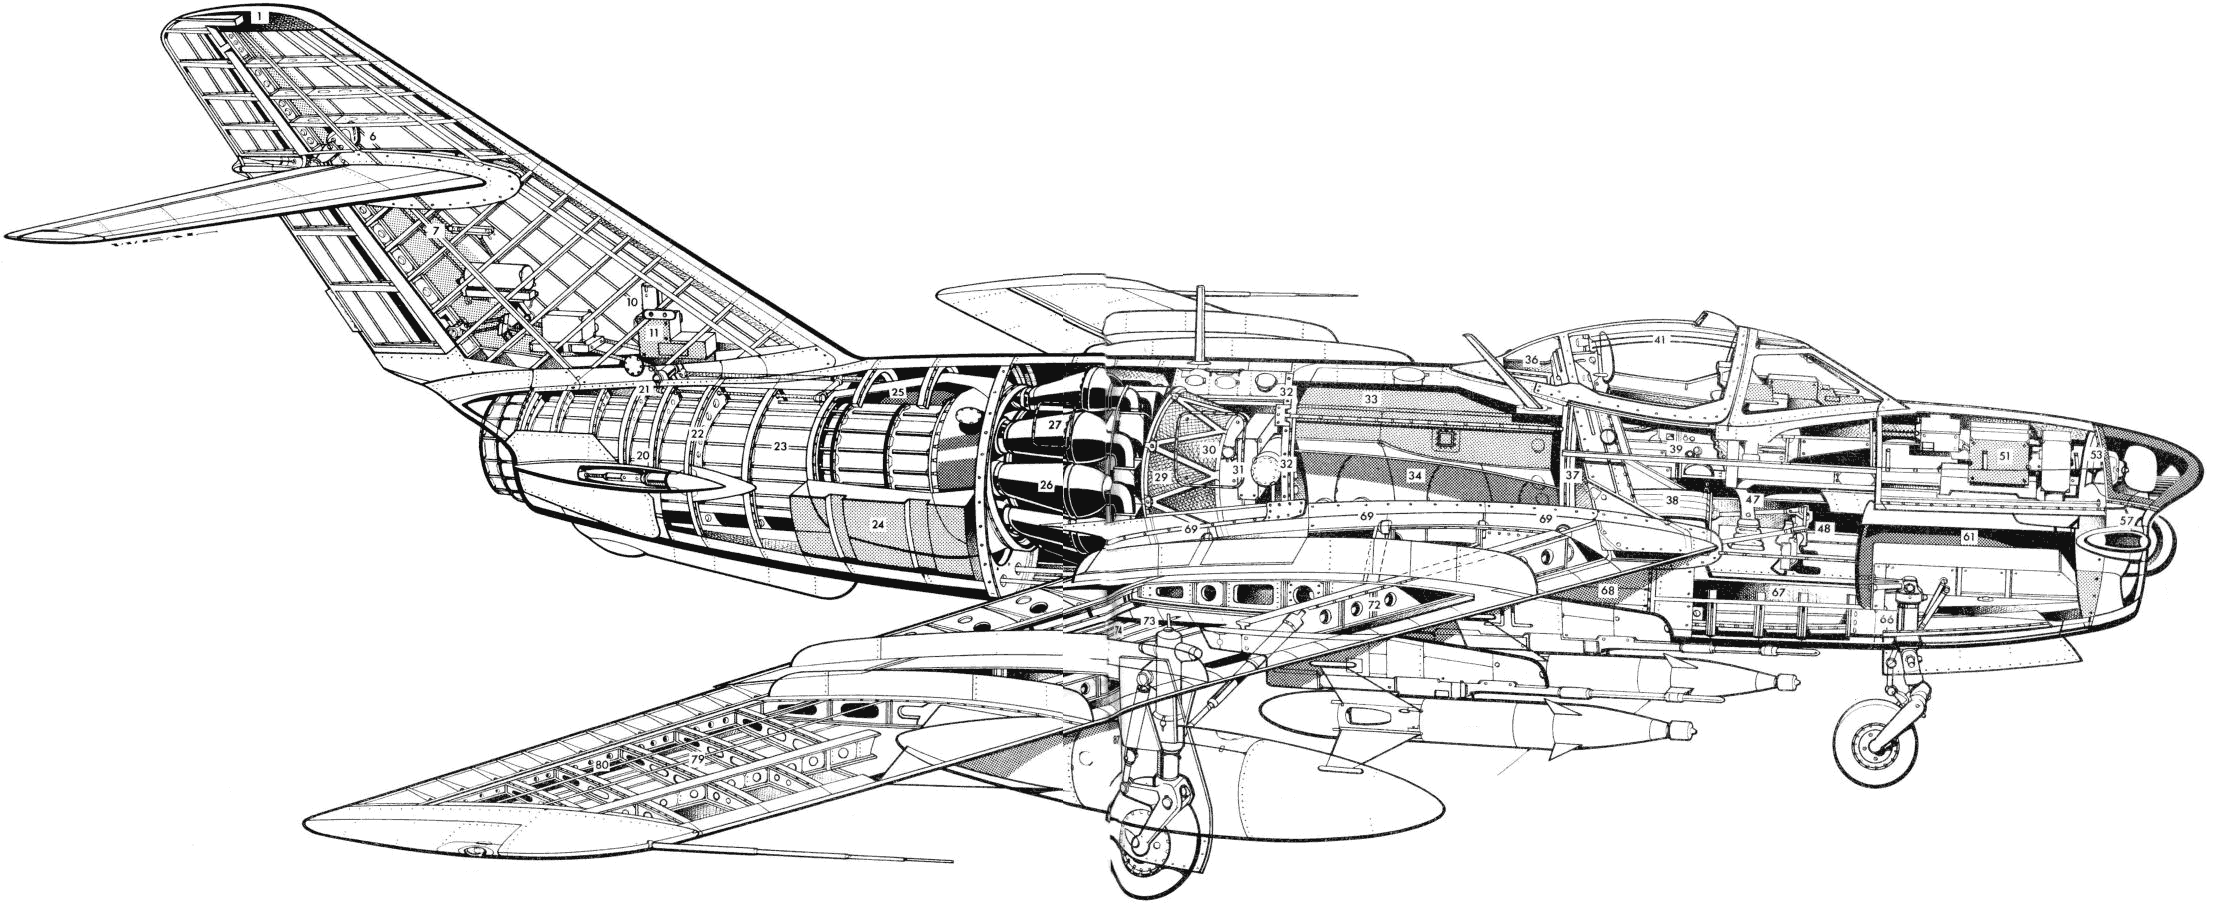 MiG-17 cutaway